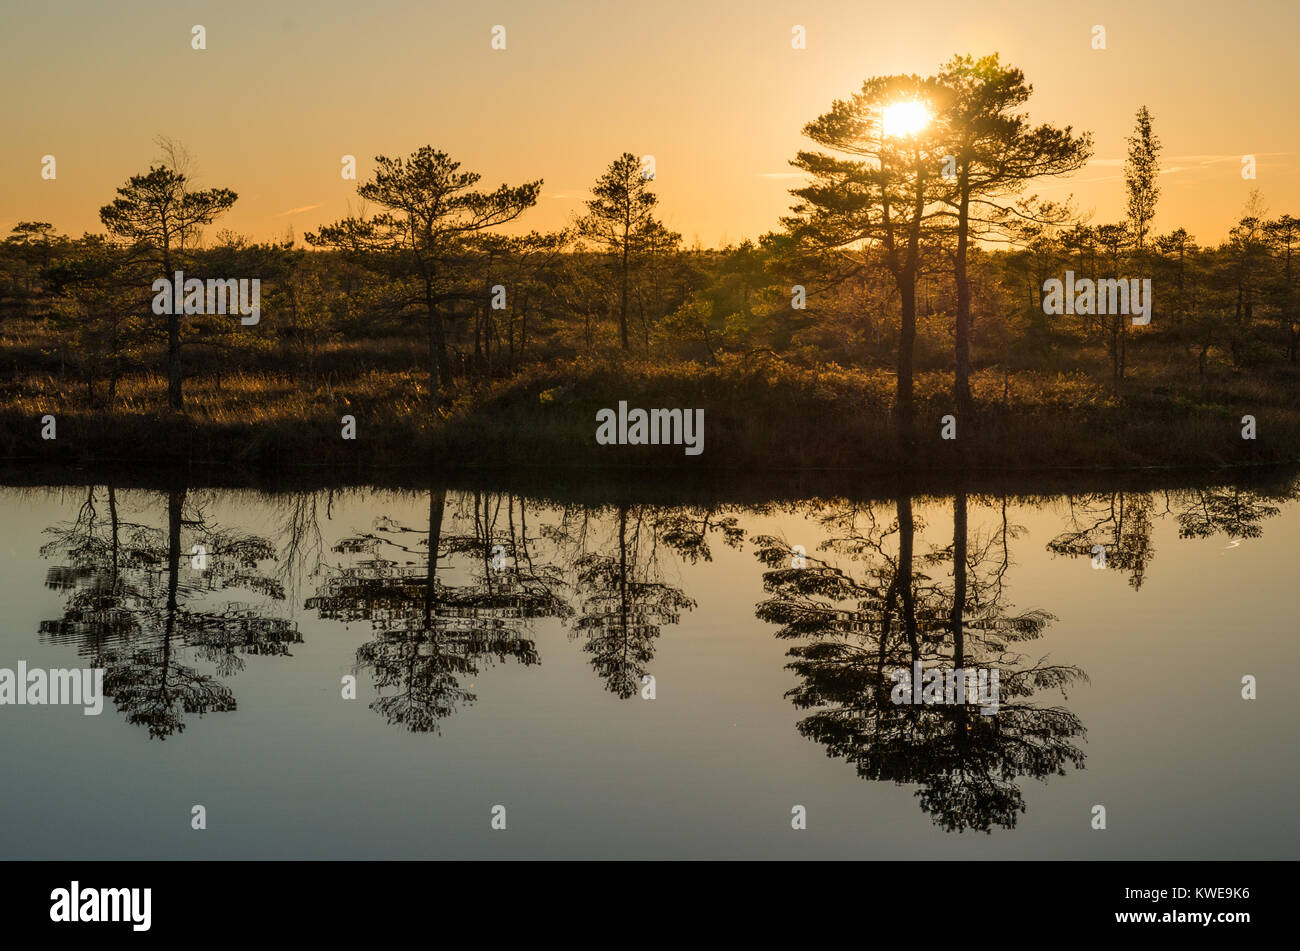 Eine Szene auf einem Sumpf bei Sonnenuntergang mit Orange, Baum Silhouetten und Reflexionen in den Teich. Stockfoto